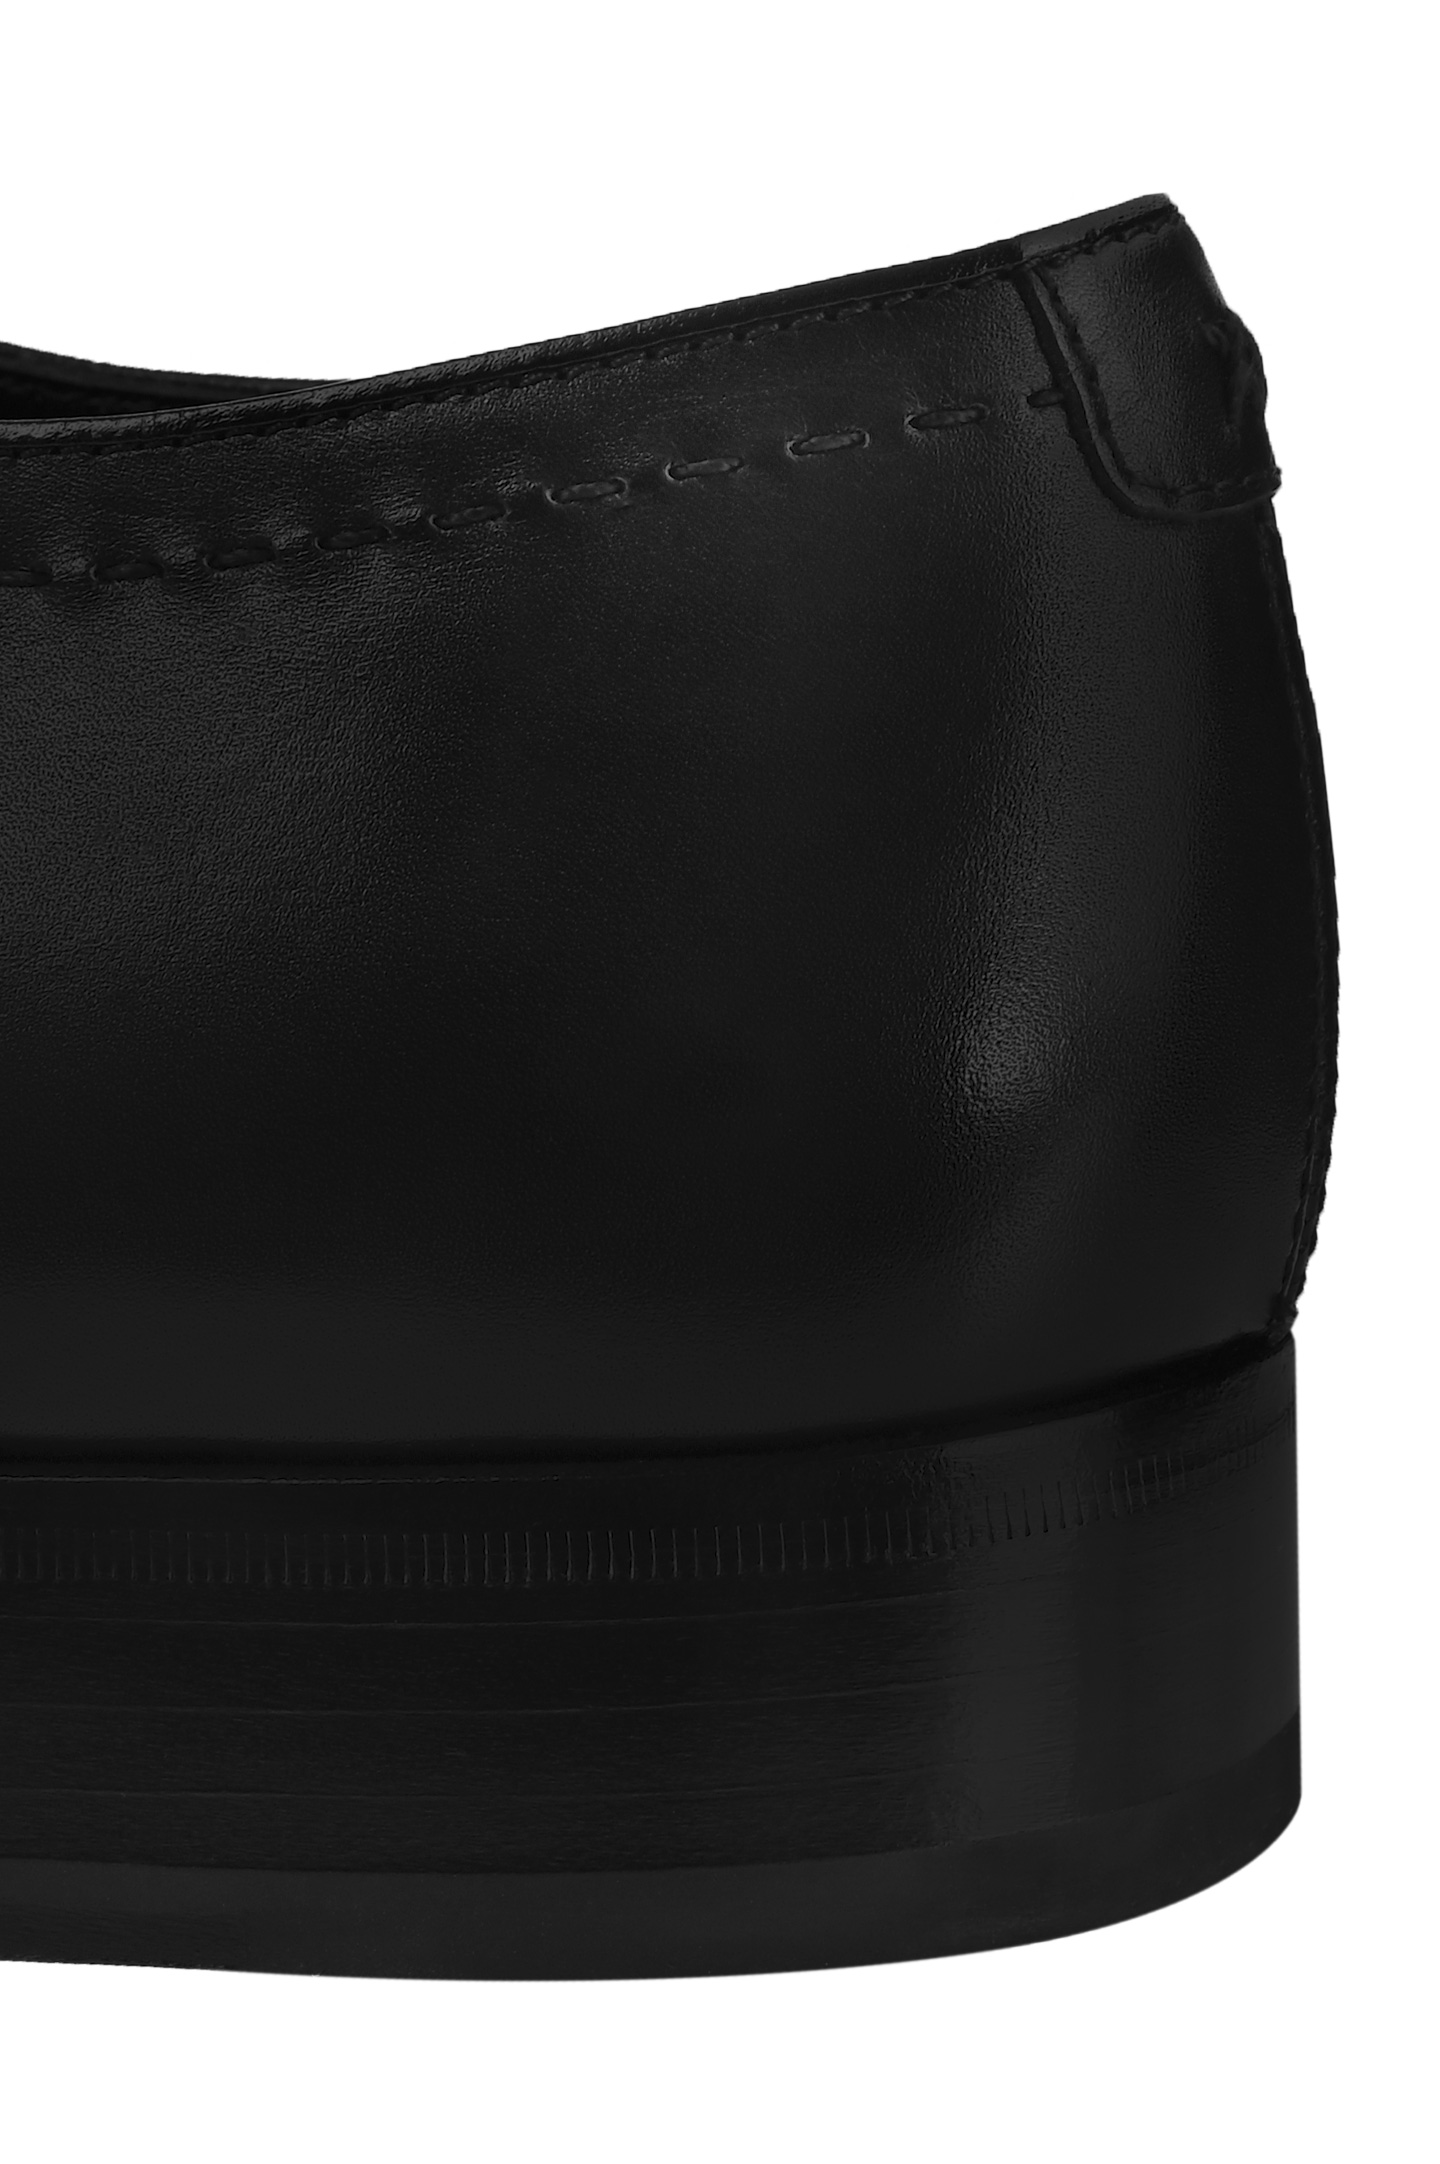 Туфли ARTIOLI 06S013/BIS, цвет: Черный, Мужской